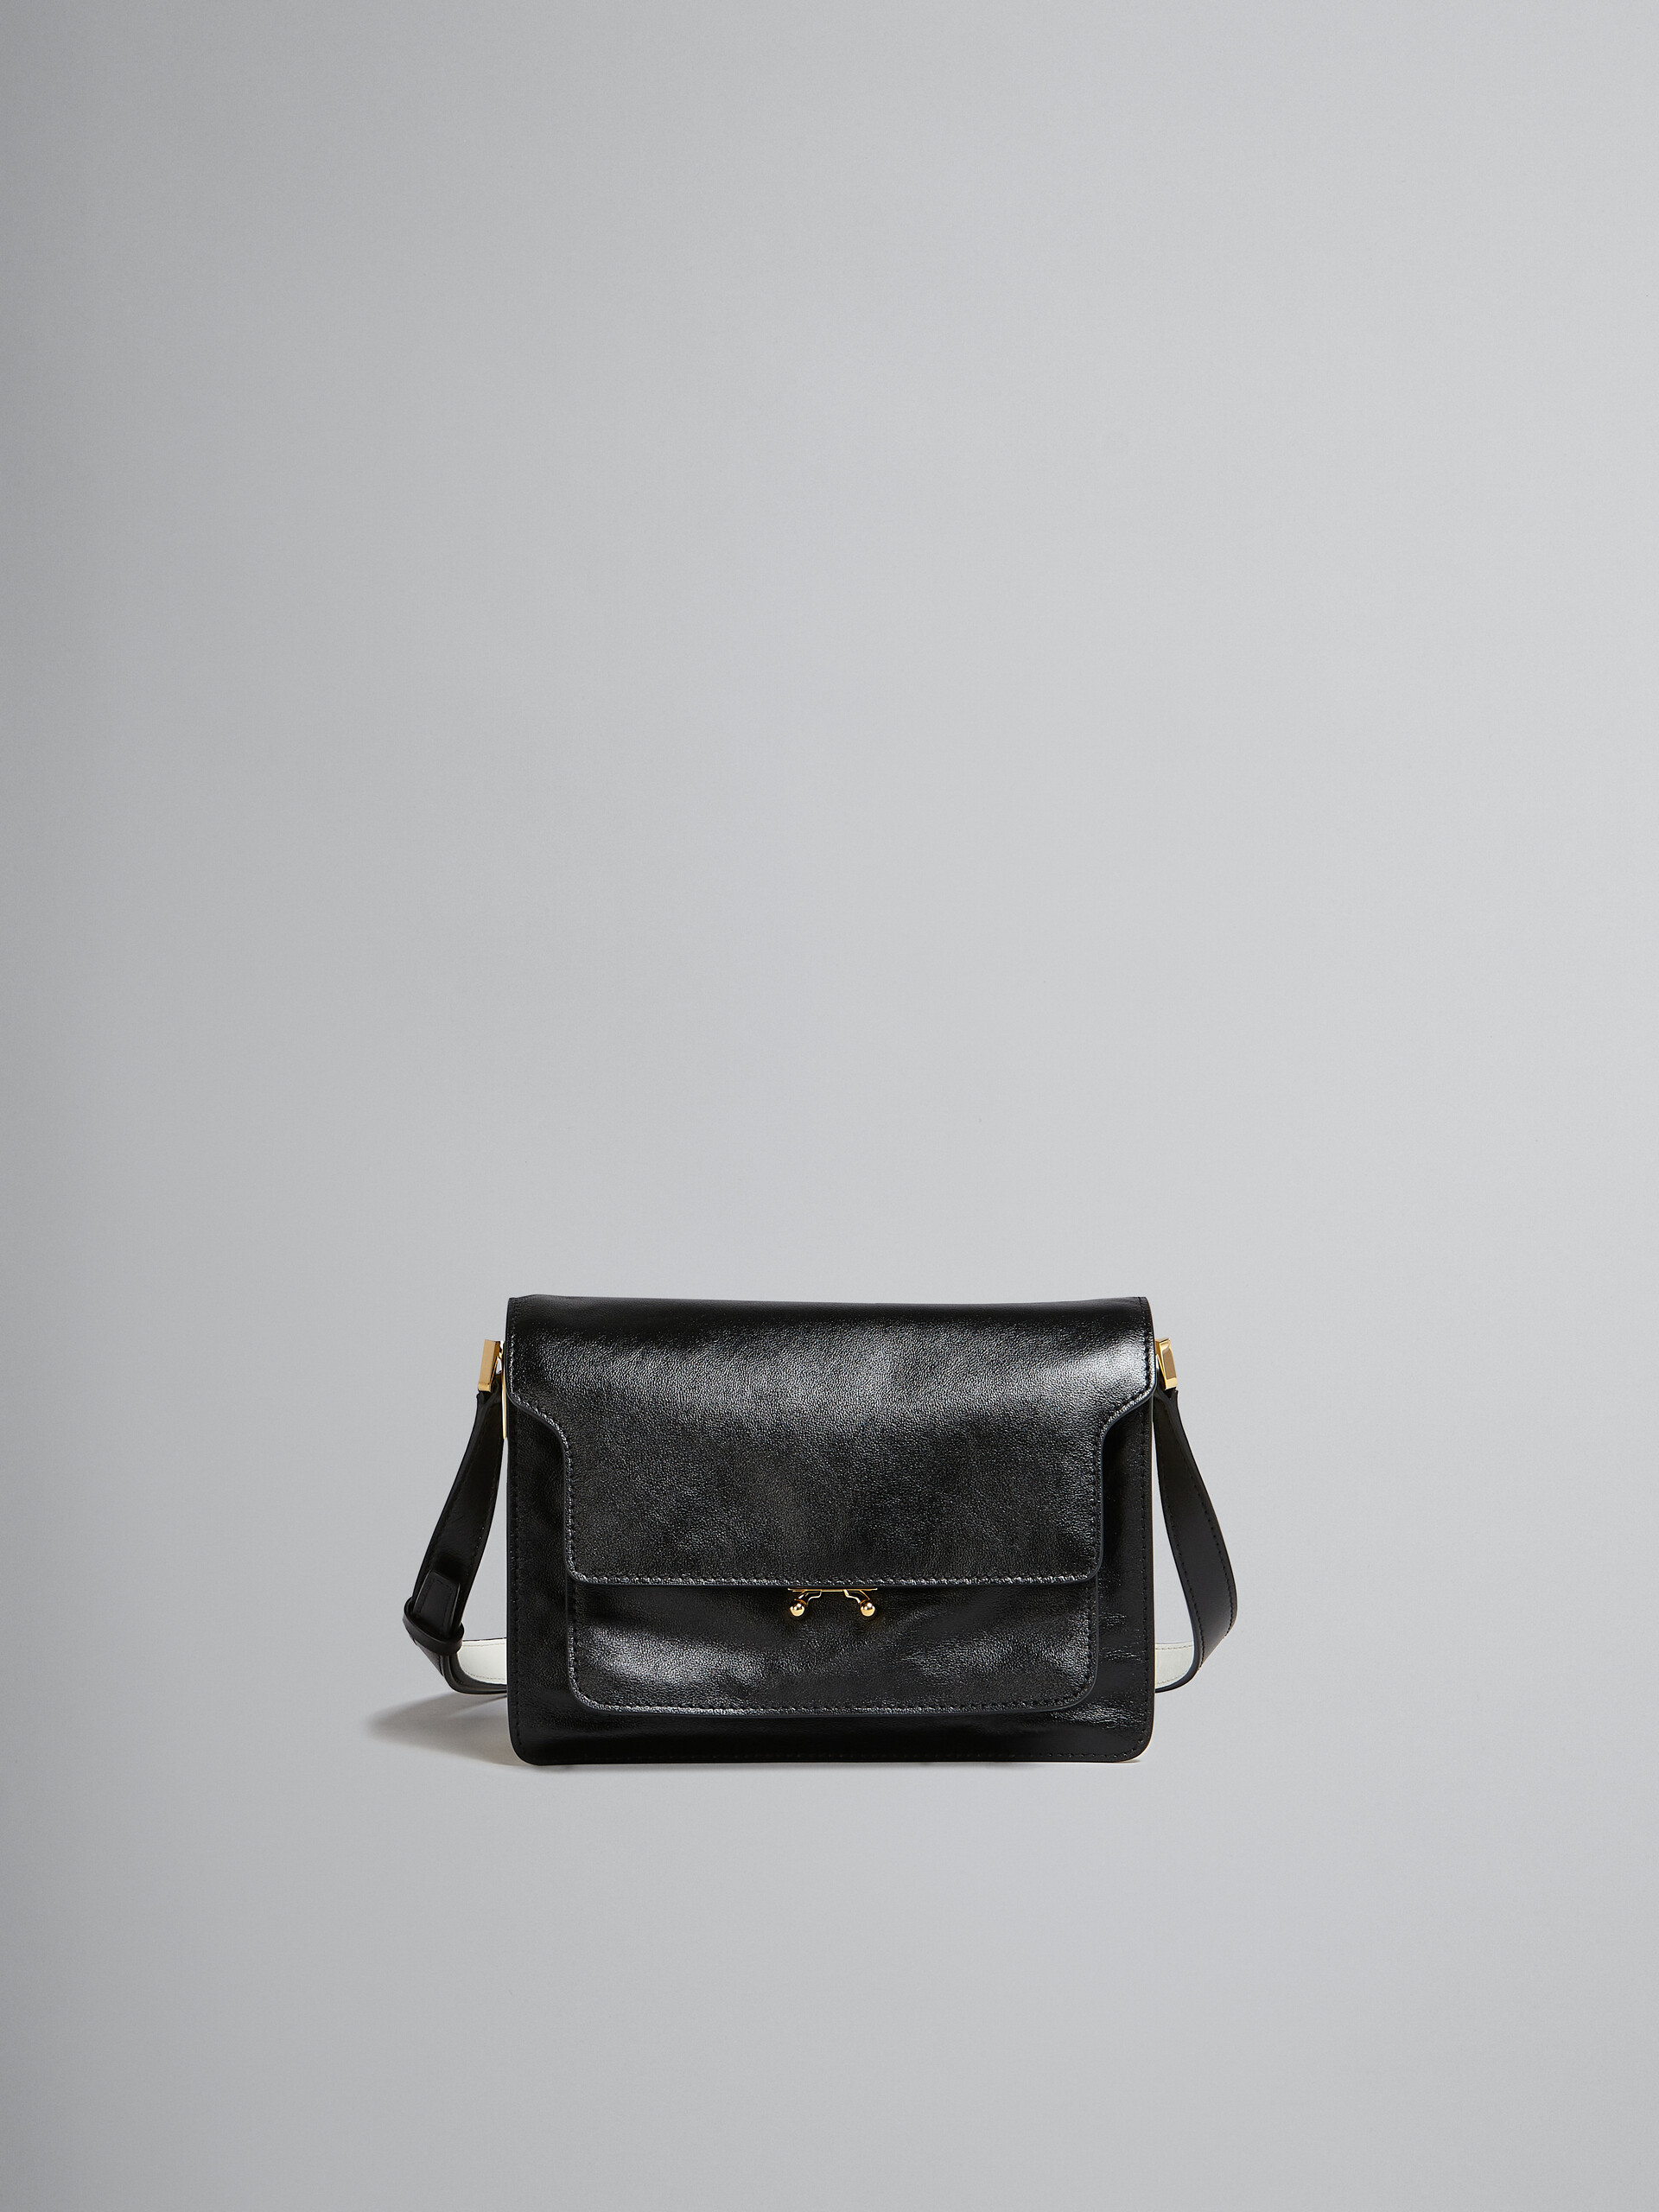 Trunk Soft Medium Bag in black and white leather - Shoulder Bag - Image 1